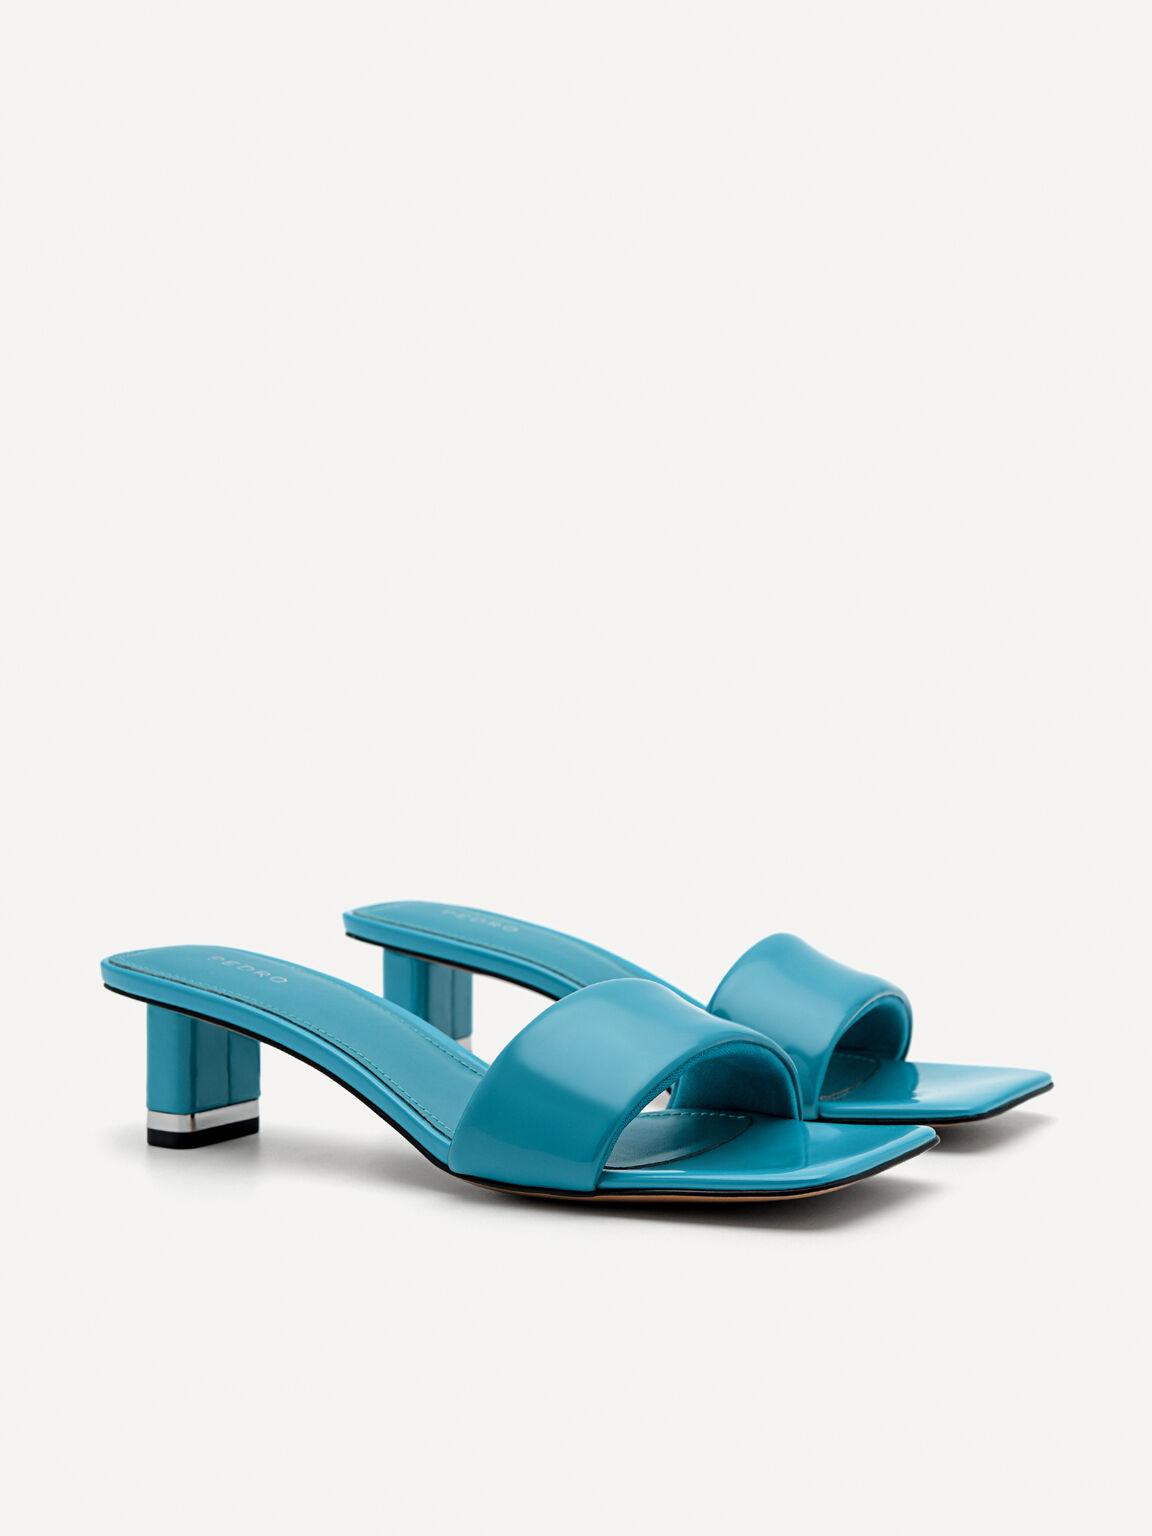 Porto Heel Sandals, Turquoise